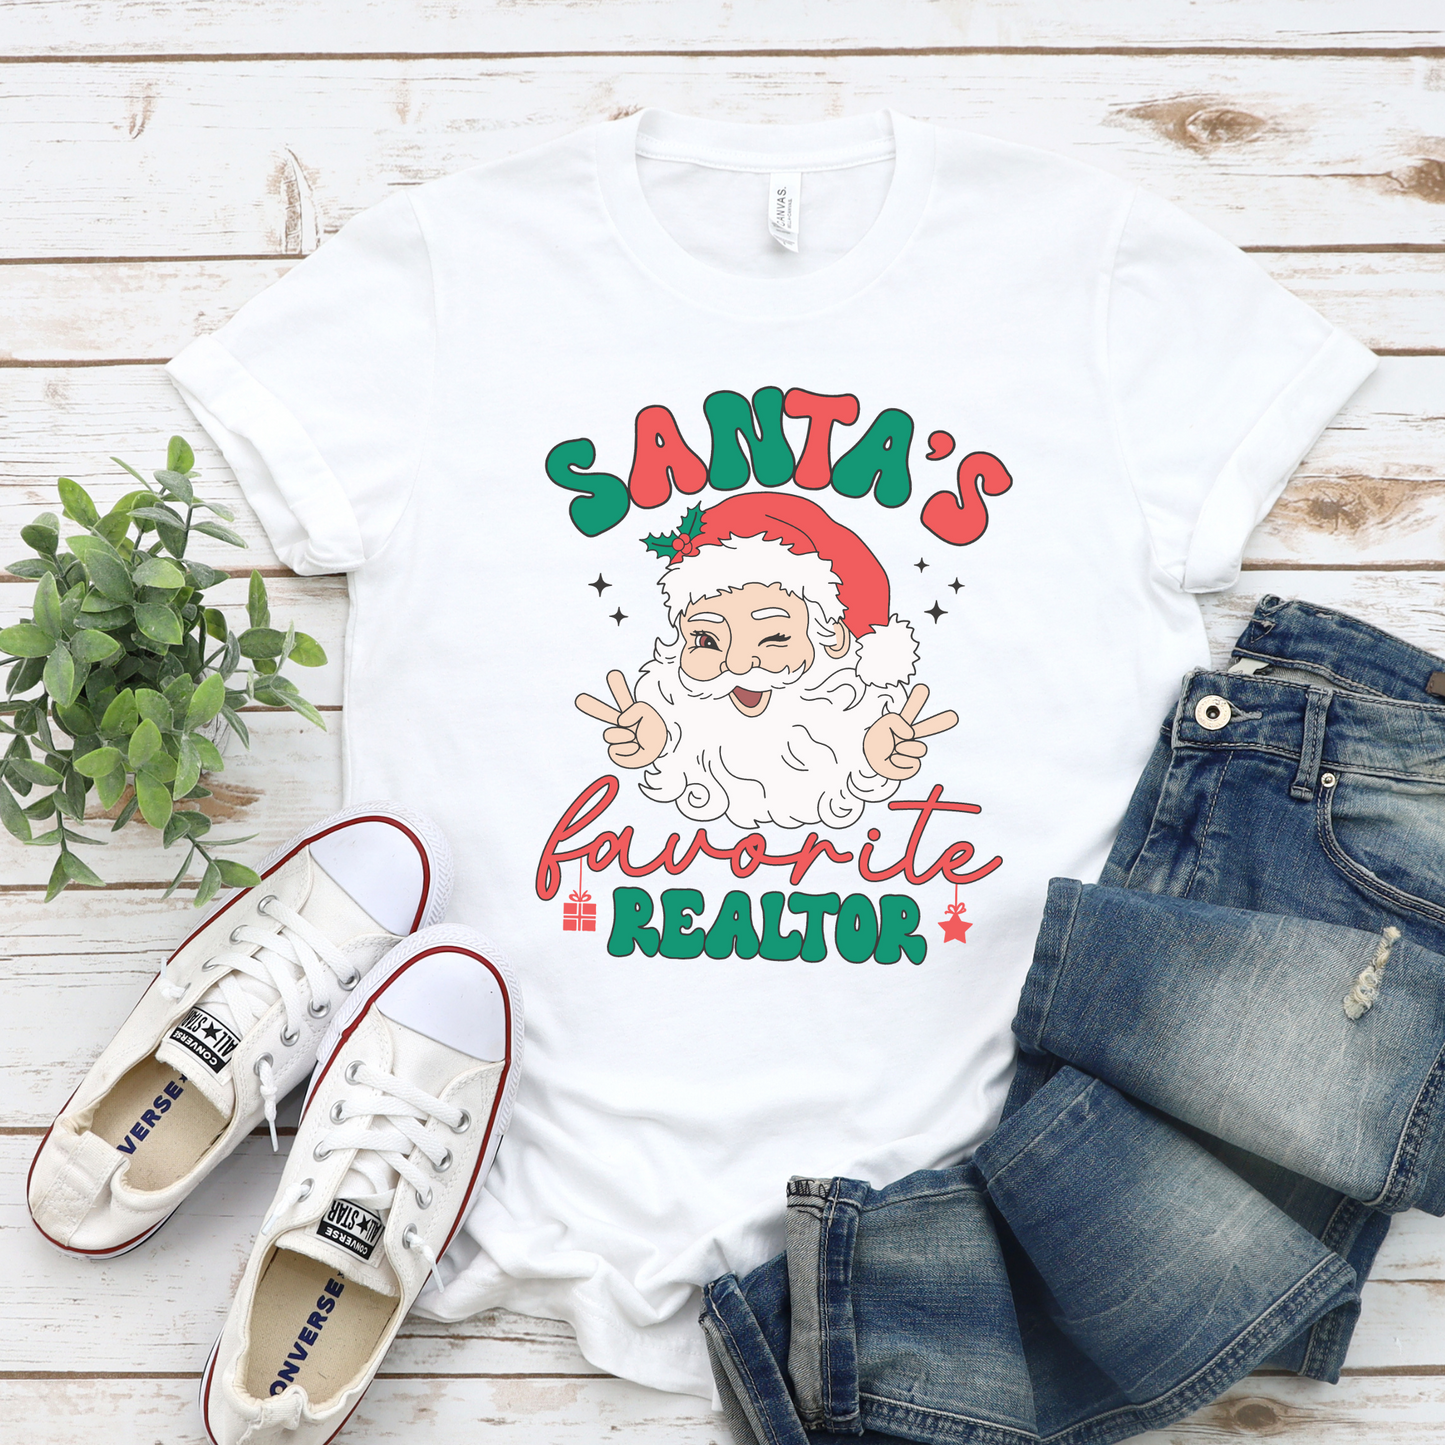 Santas Favorite Realtor T-Shirt